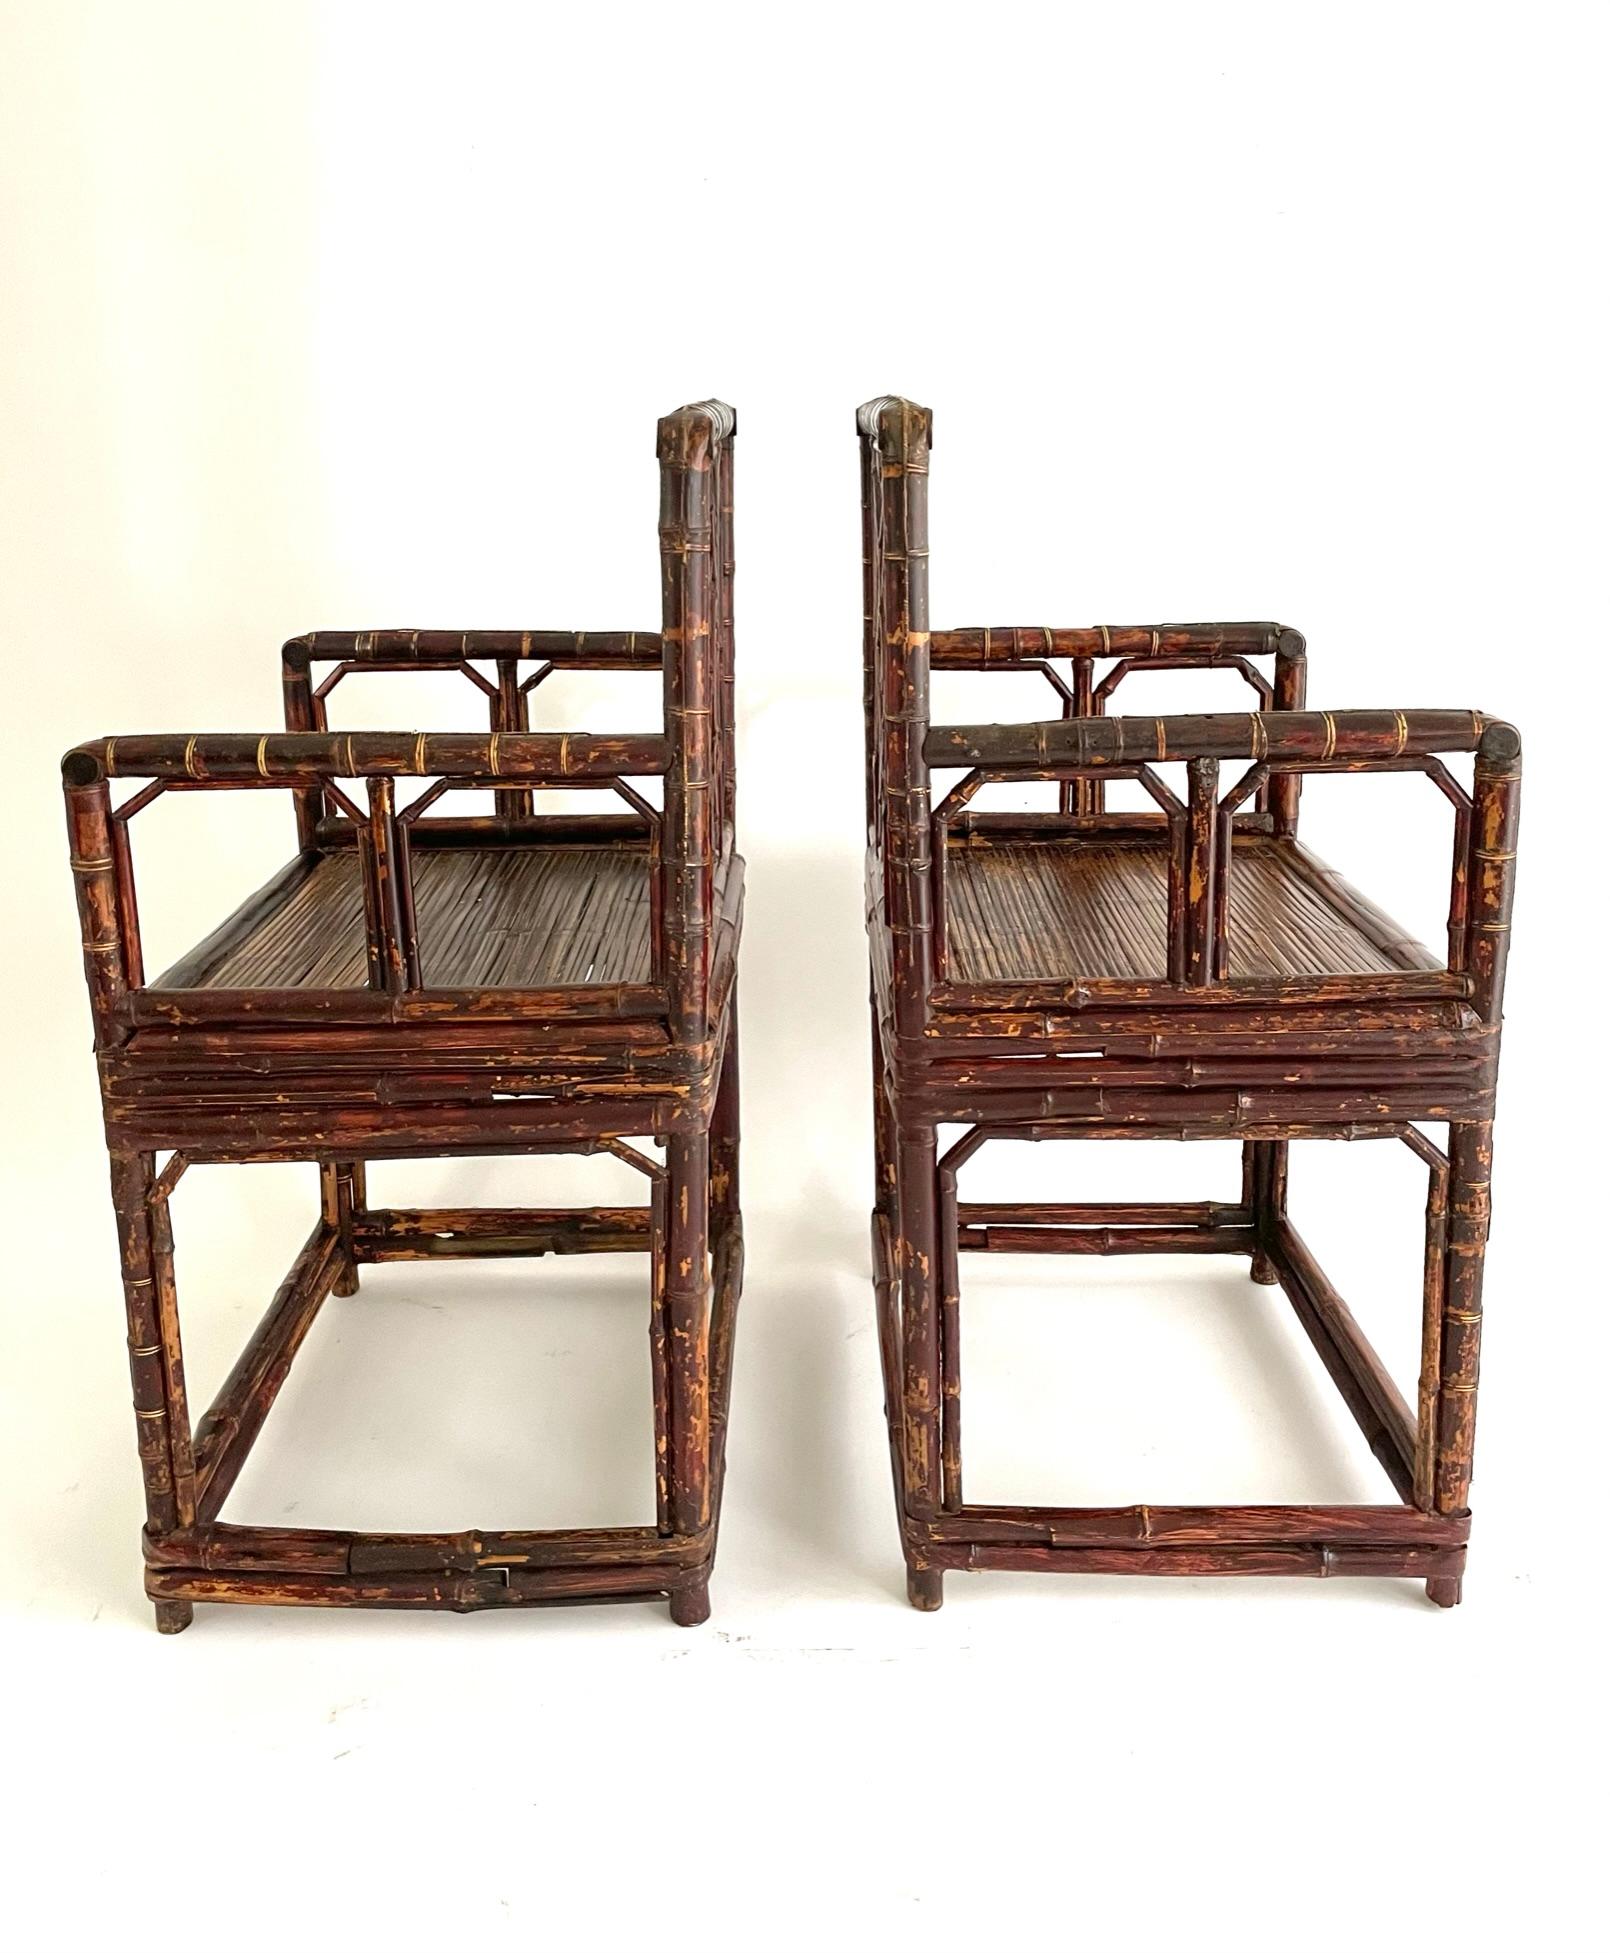 Paire de fauteuils en bambou de style treillis, datant de 1880. 
Les vieux meubles en bambou sont beaucoup plus rares que les meubles en bois, car peu ont survécu. La menuiserie des meubles en bambou peut être très séduisante car elle imite en